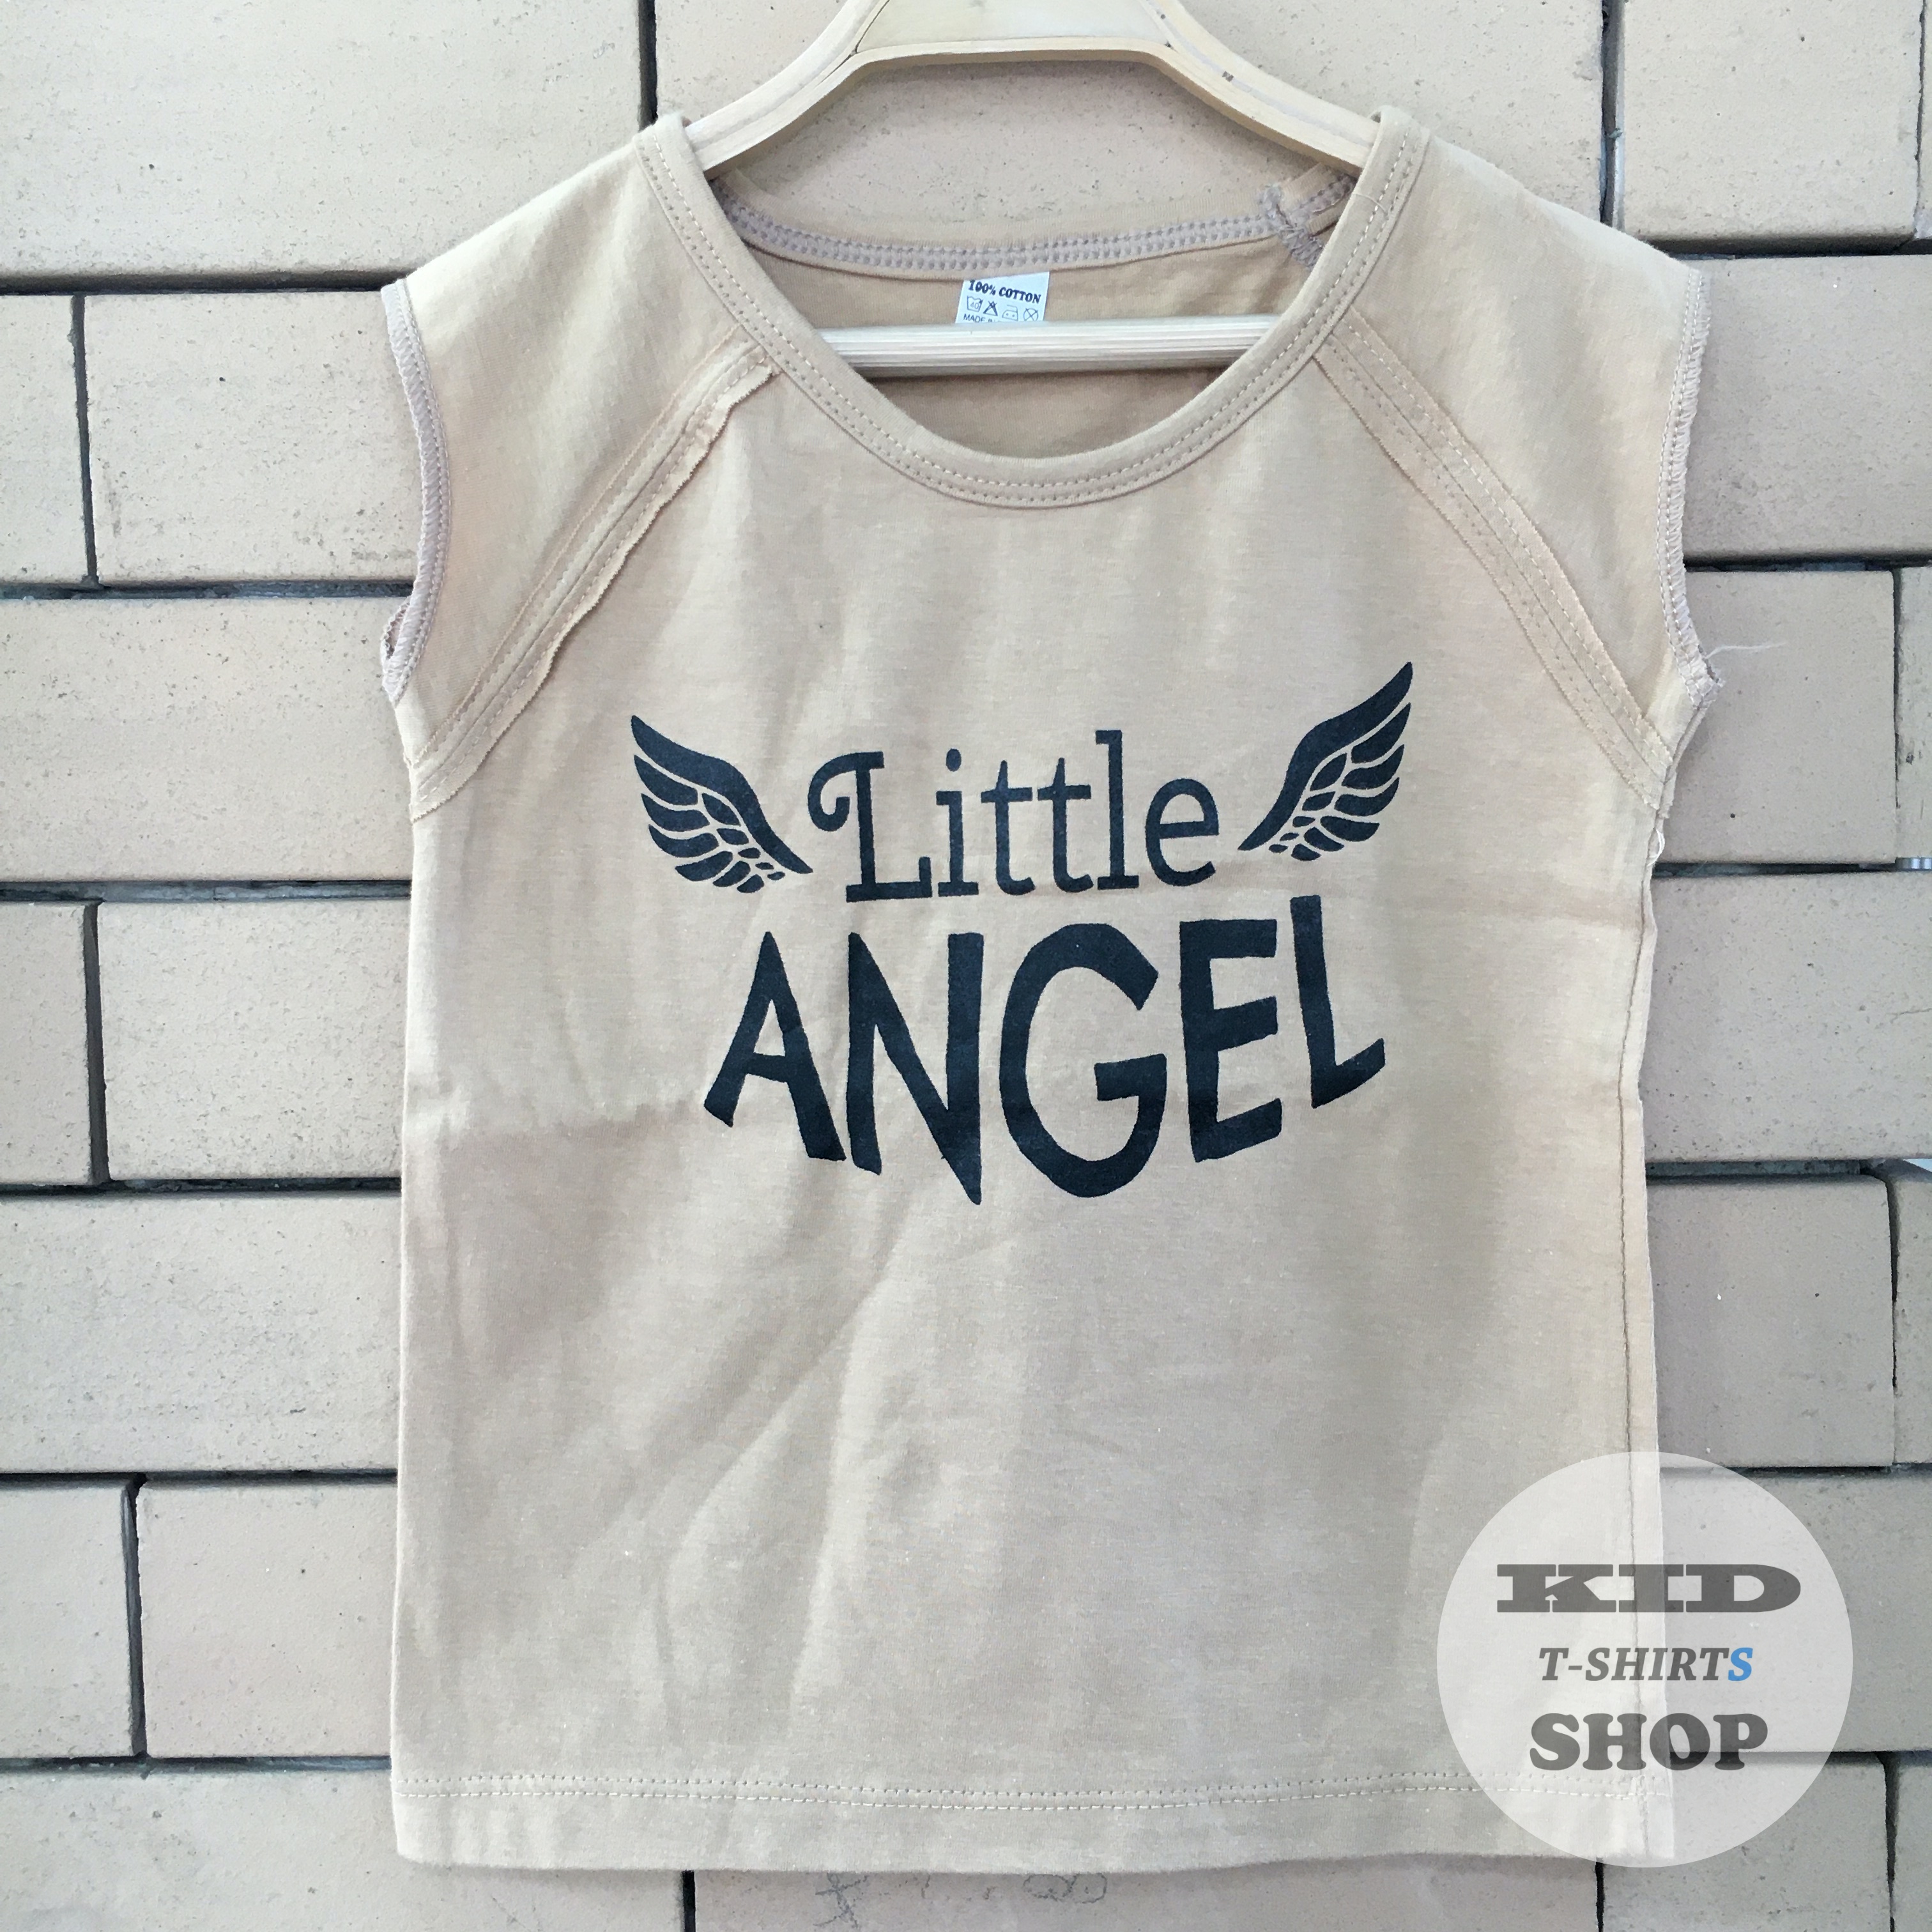 BabyOutlet เสื้อยืดเด็ก ลาย Little Angel สีน้ำตาล แขนล่ำ มี 4 ไซส์ (SS , S , M , L) เสื้อเด็ก มี Size แรกเกิด - 6 ปี แขนกุด ผลิตจากผ้าฝ้าย 100% ชุดเด็ก